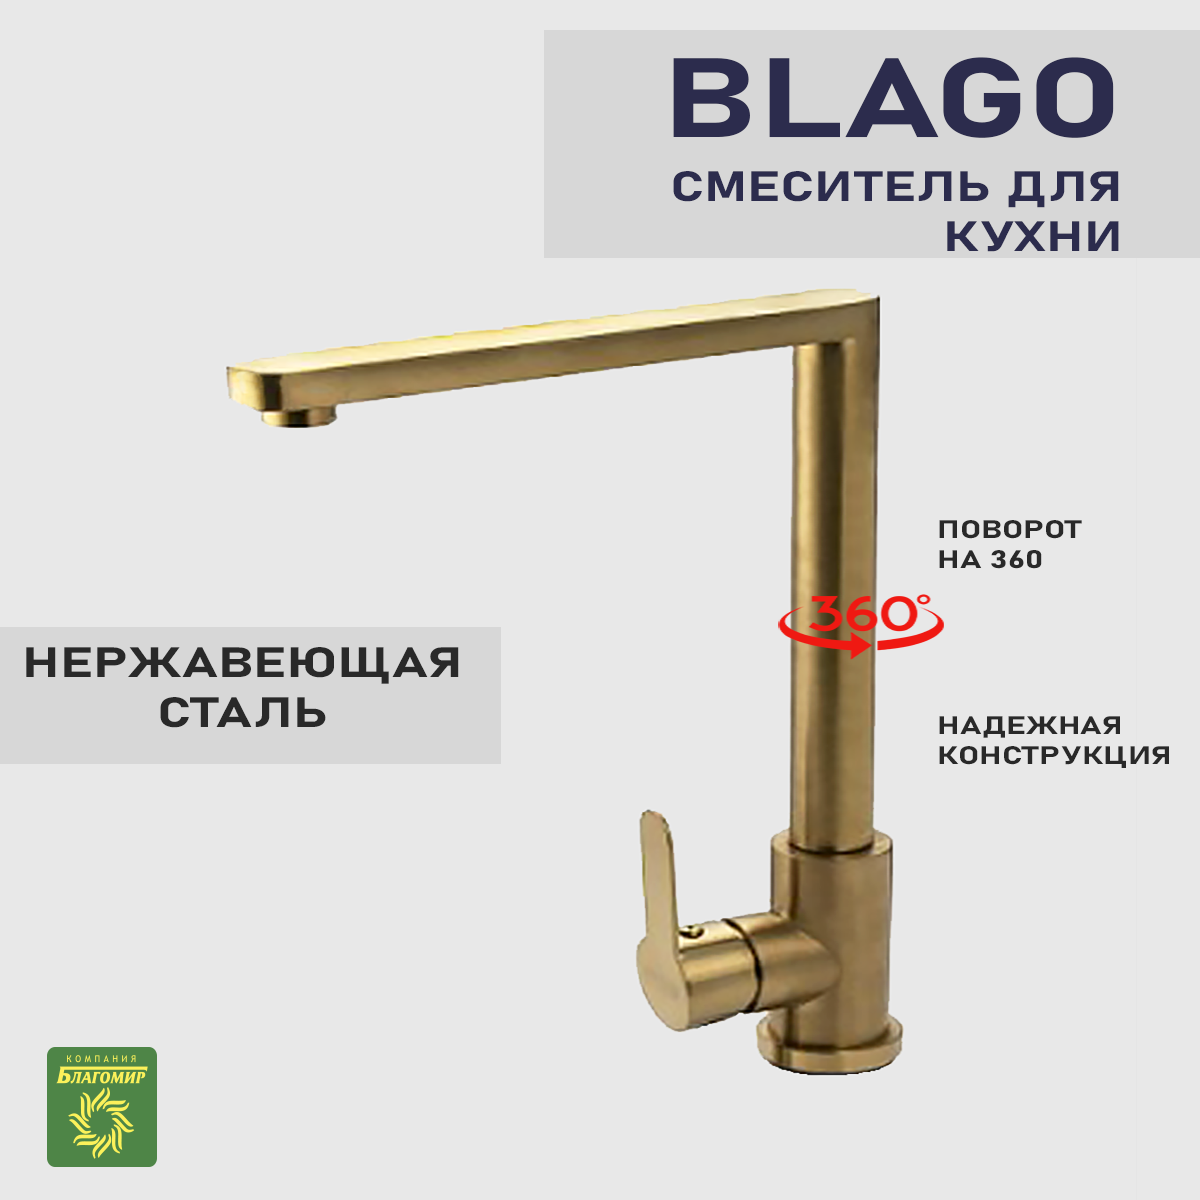 Смеситель для кухни BLAGO, кран для кухни цвет золото материал нержавеющая сталь.